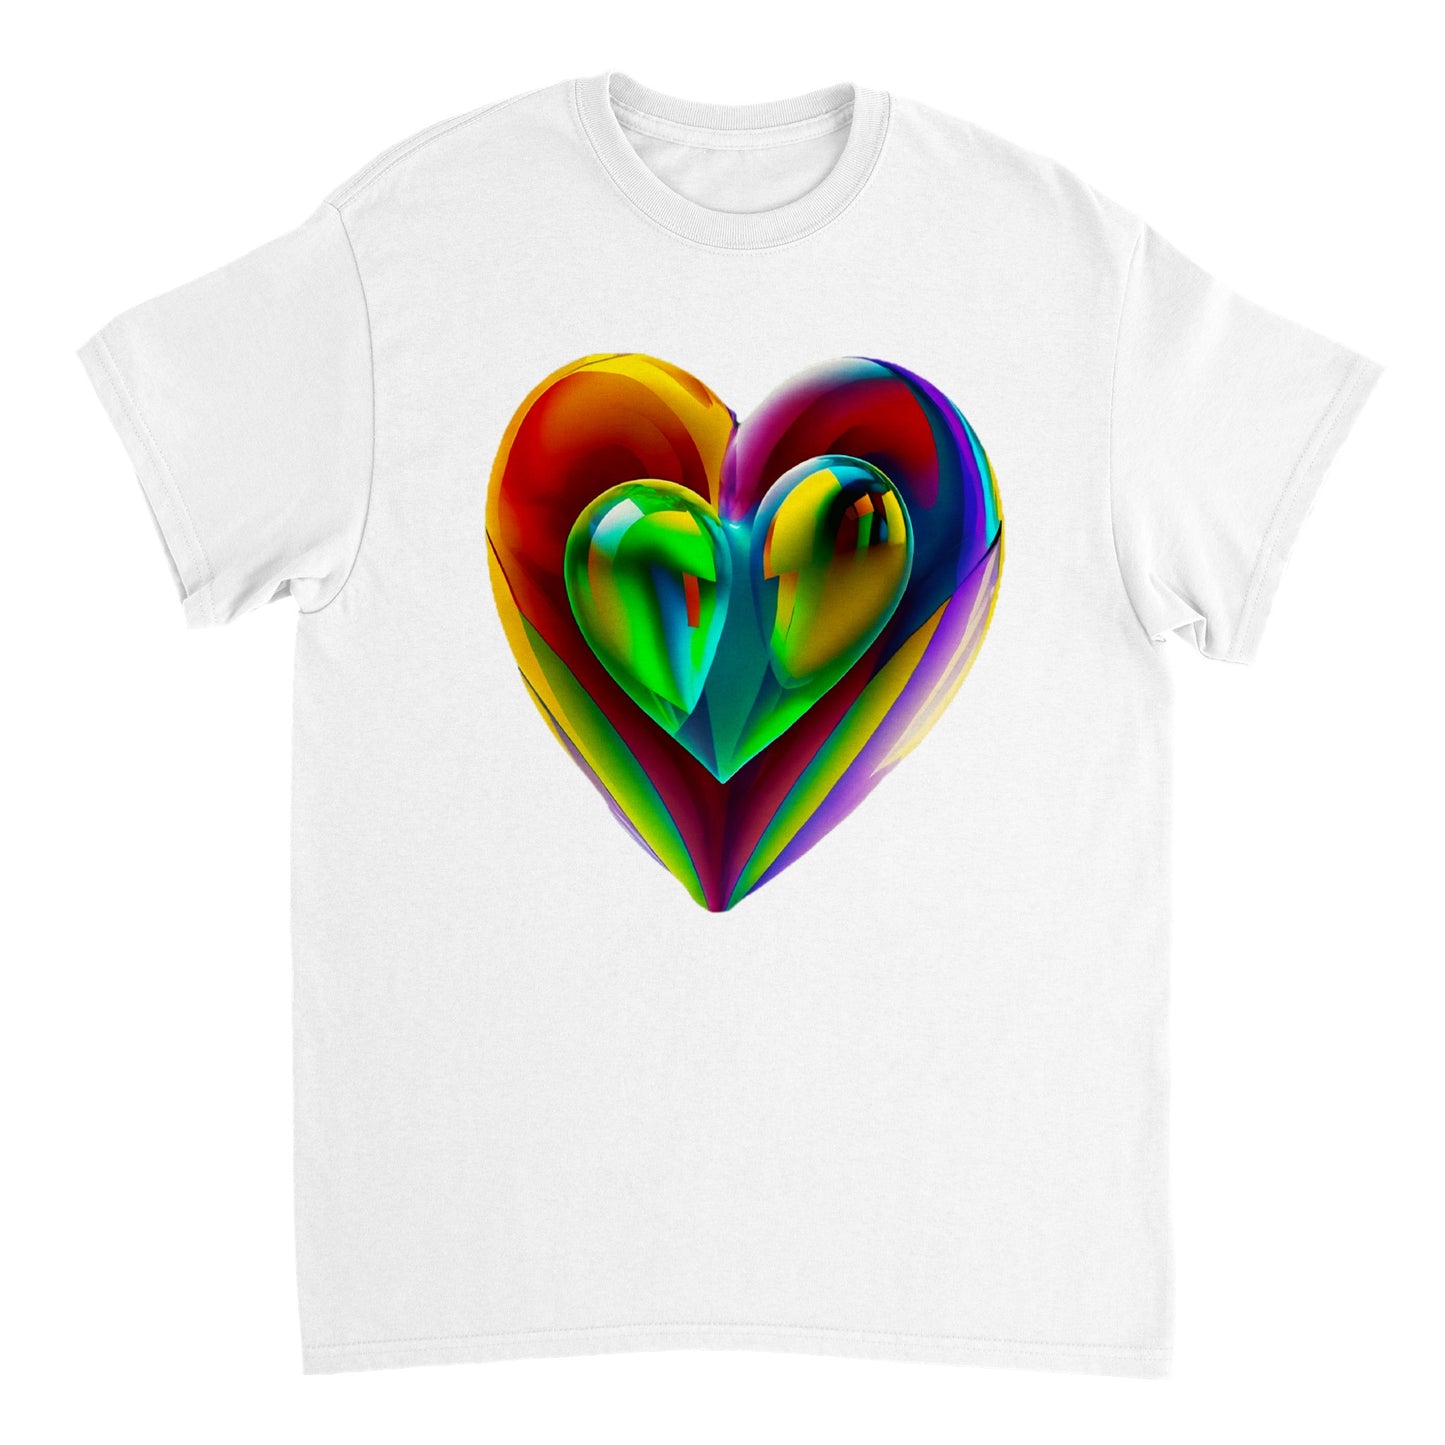 Love Heart - Heavyweight Unisex Crewneck T-shirt 82